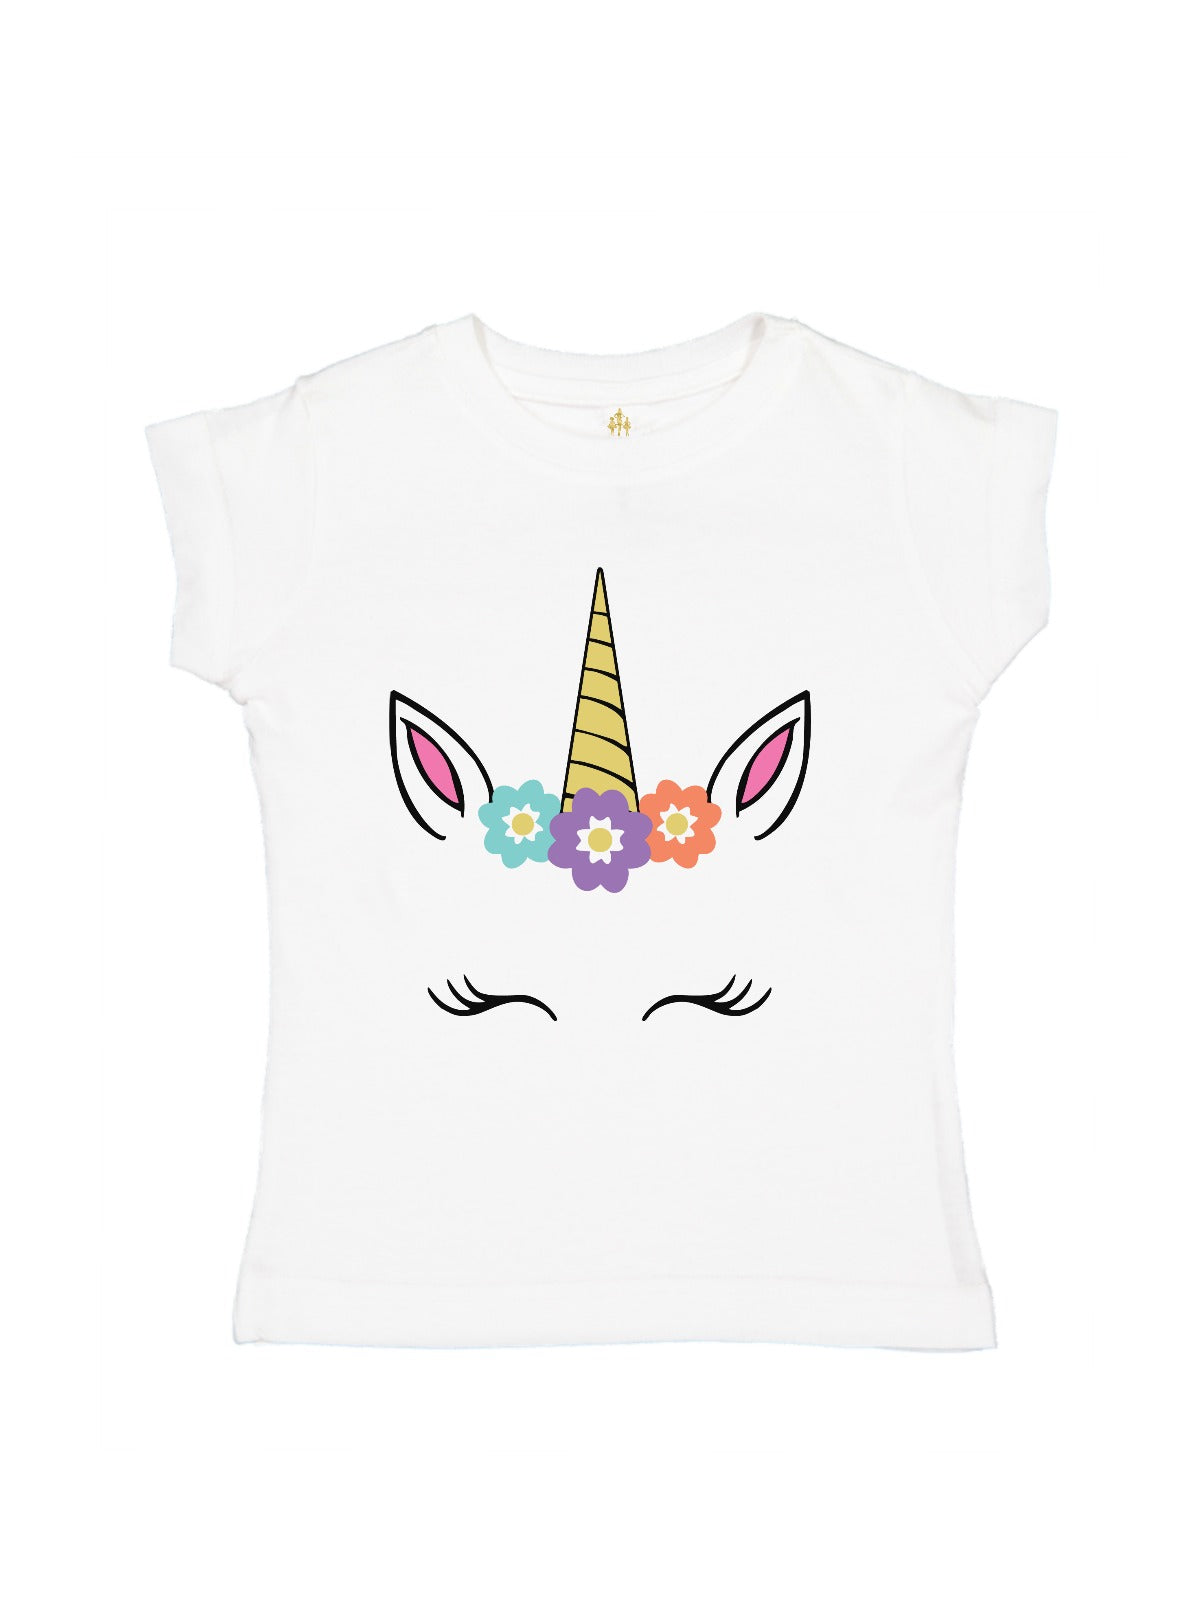 personalized smiling unicorn face shirt